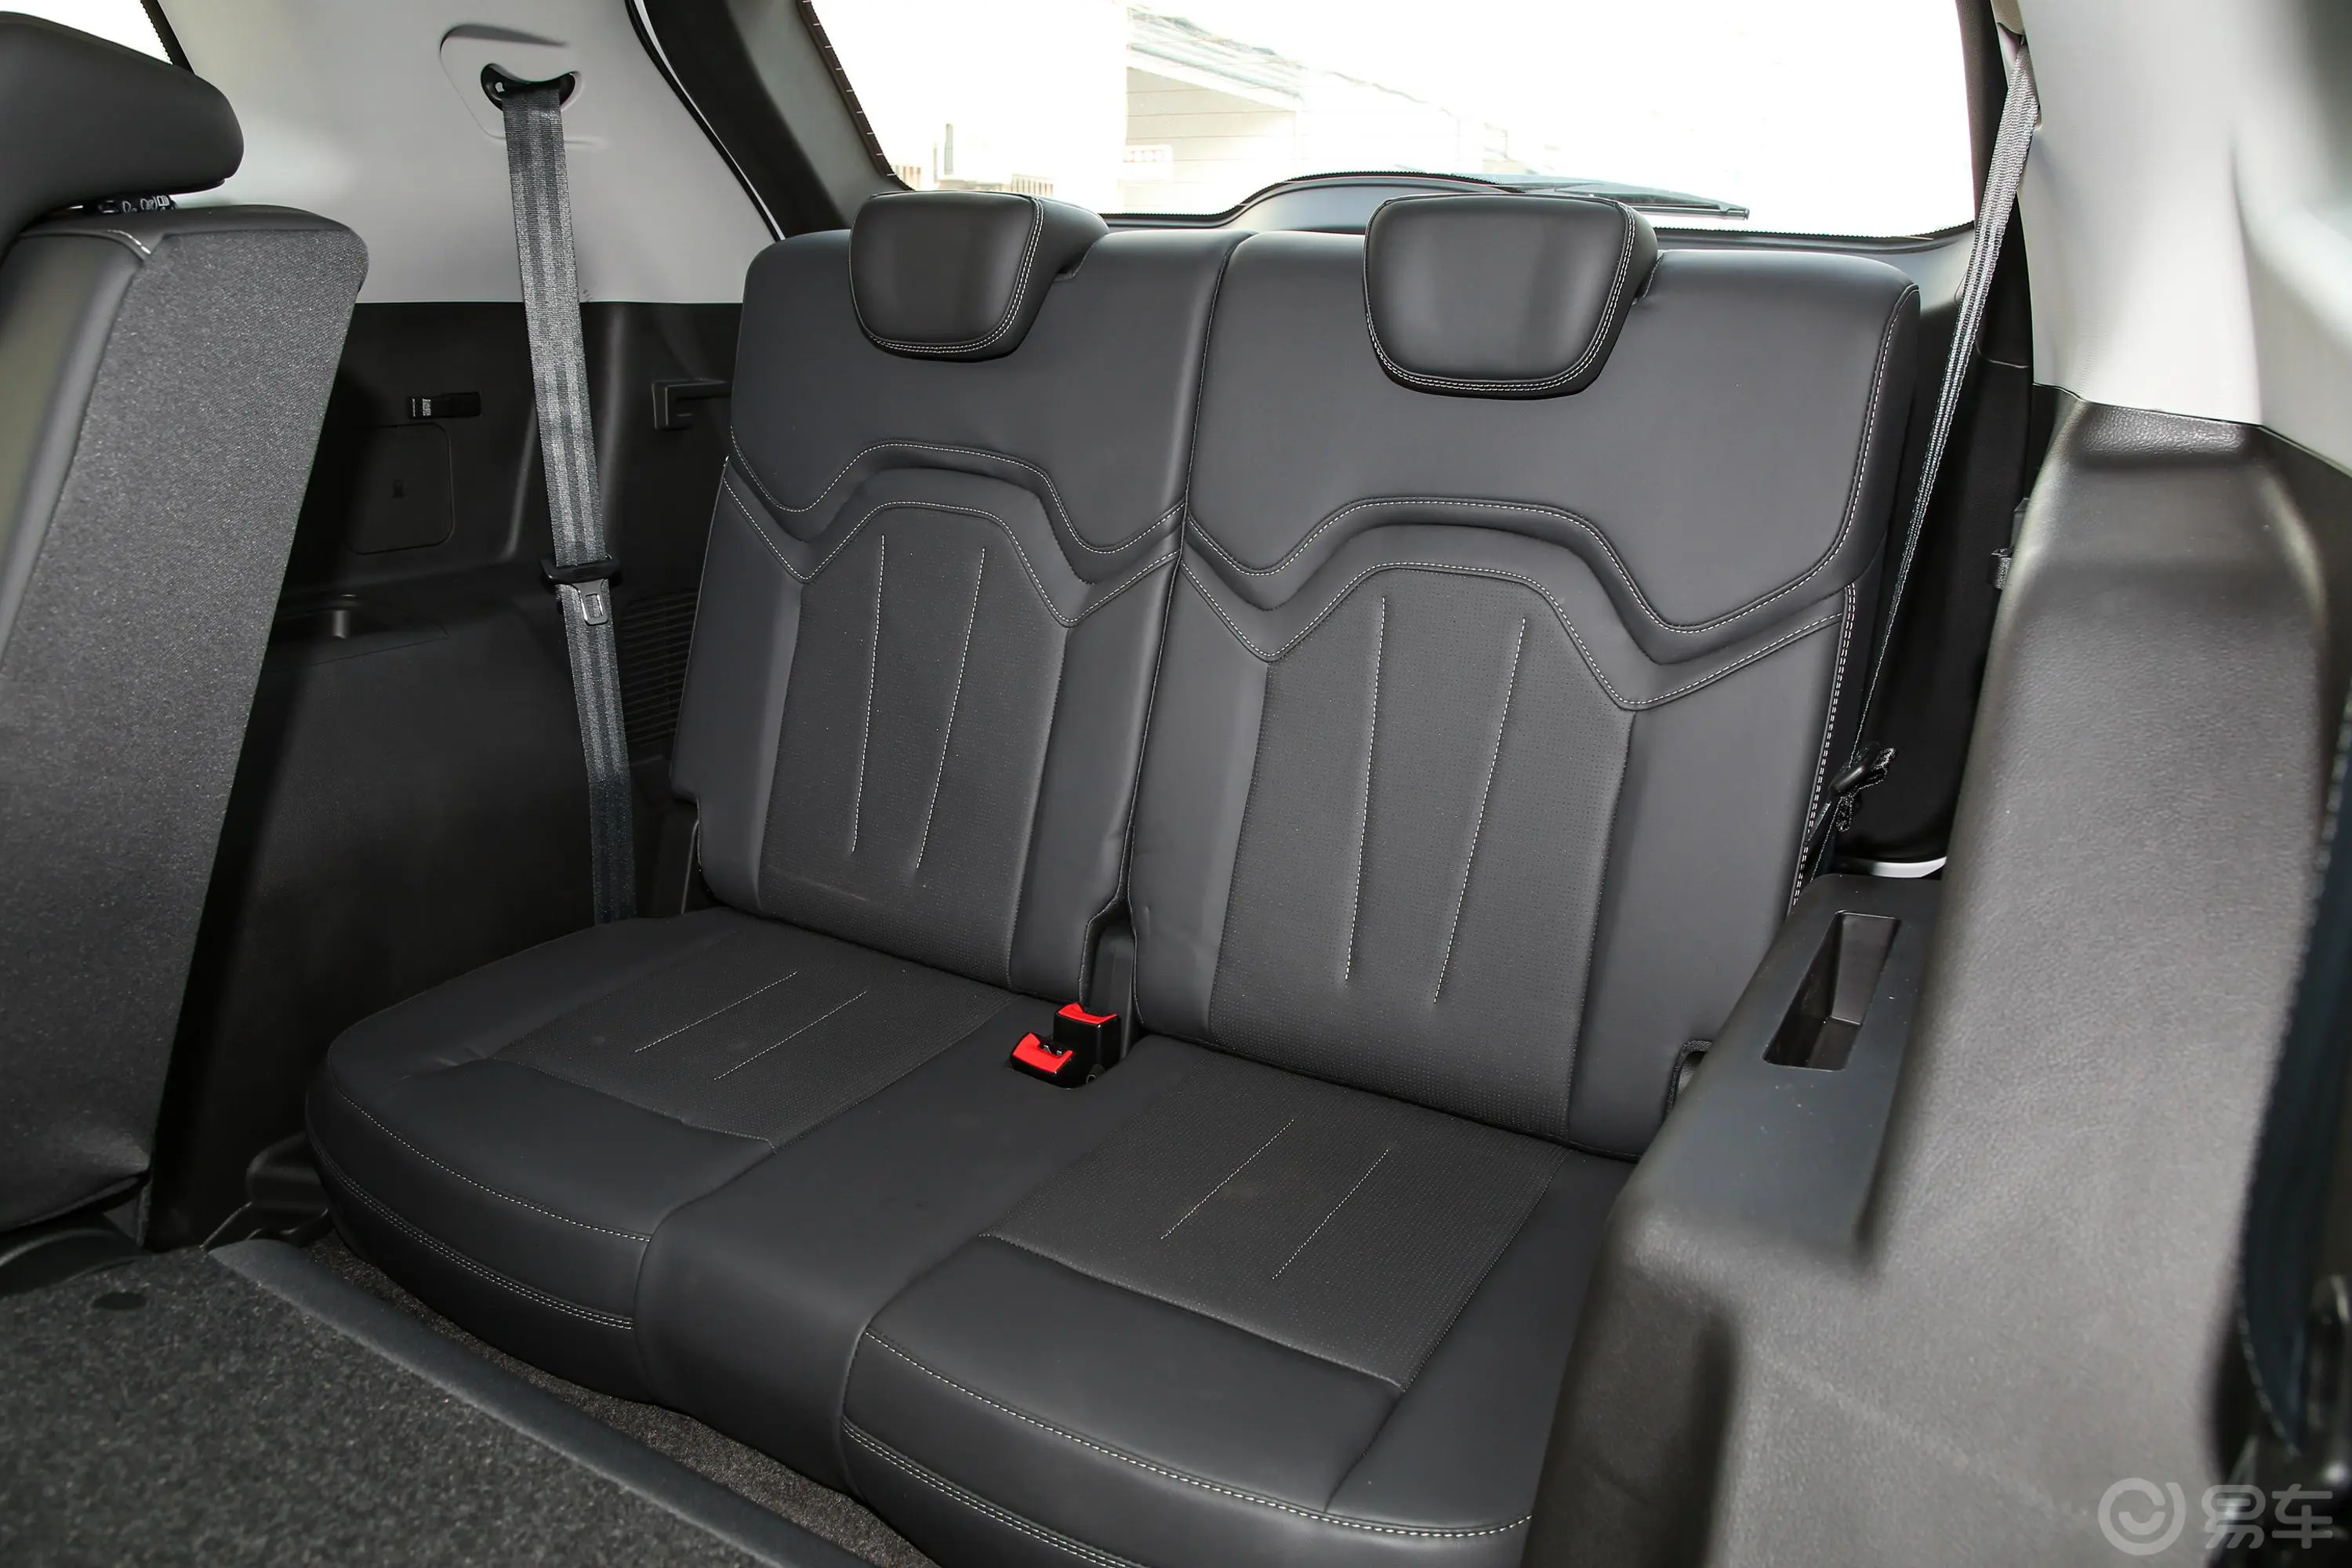 捷途X90 PLUS改款 1.5T 手动洋房 7座第三排座椅